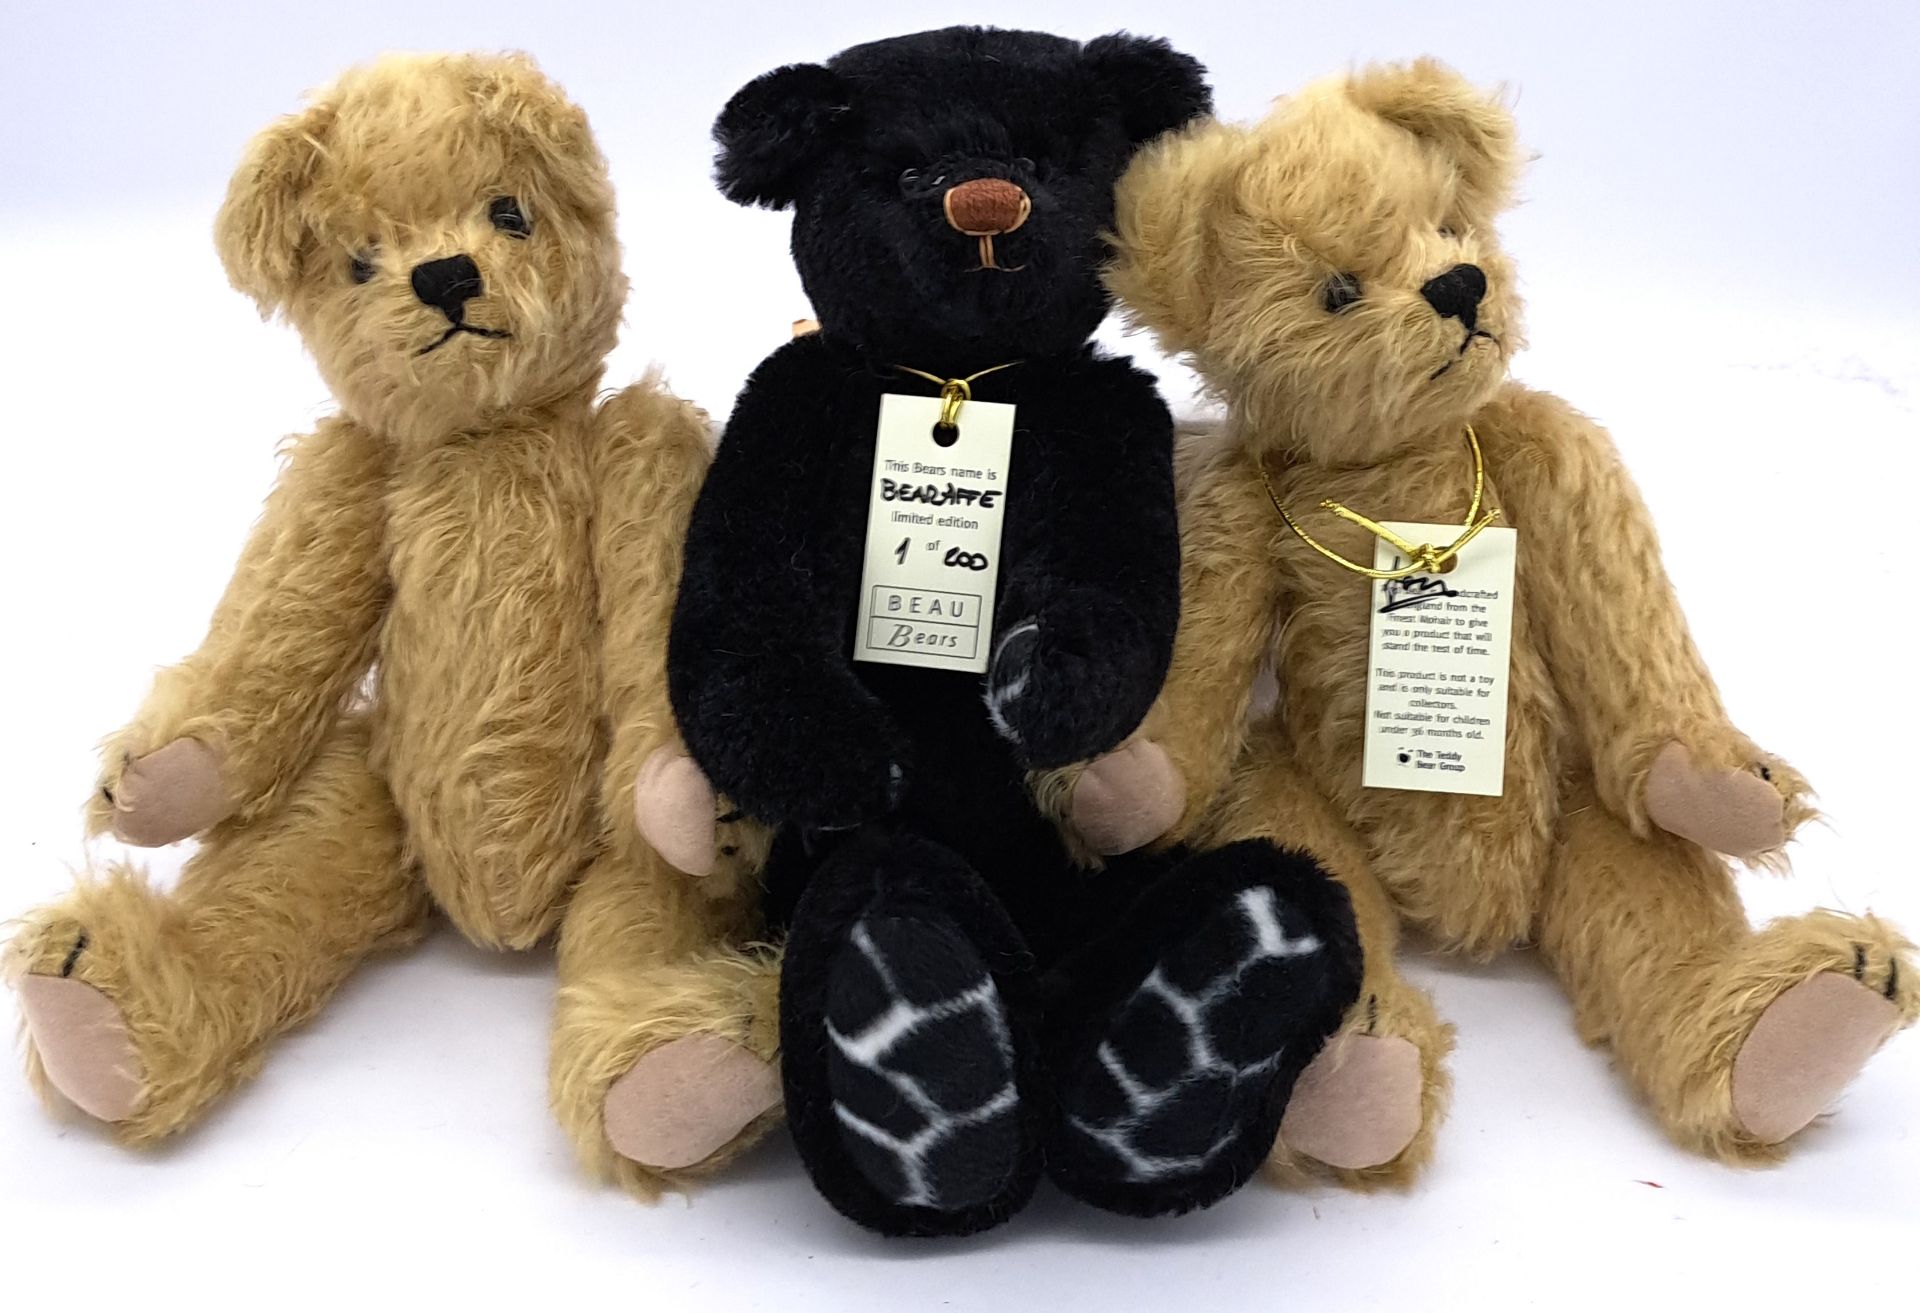 Beau Bears trio of artist teddy bears